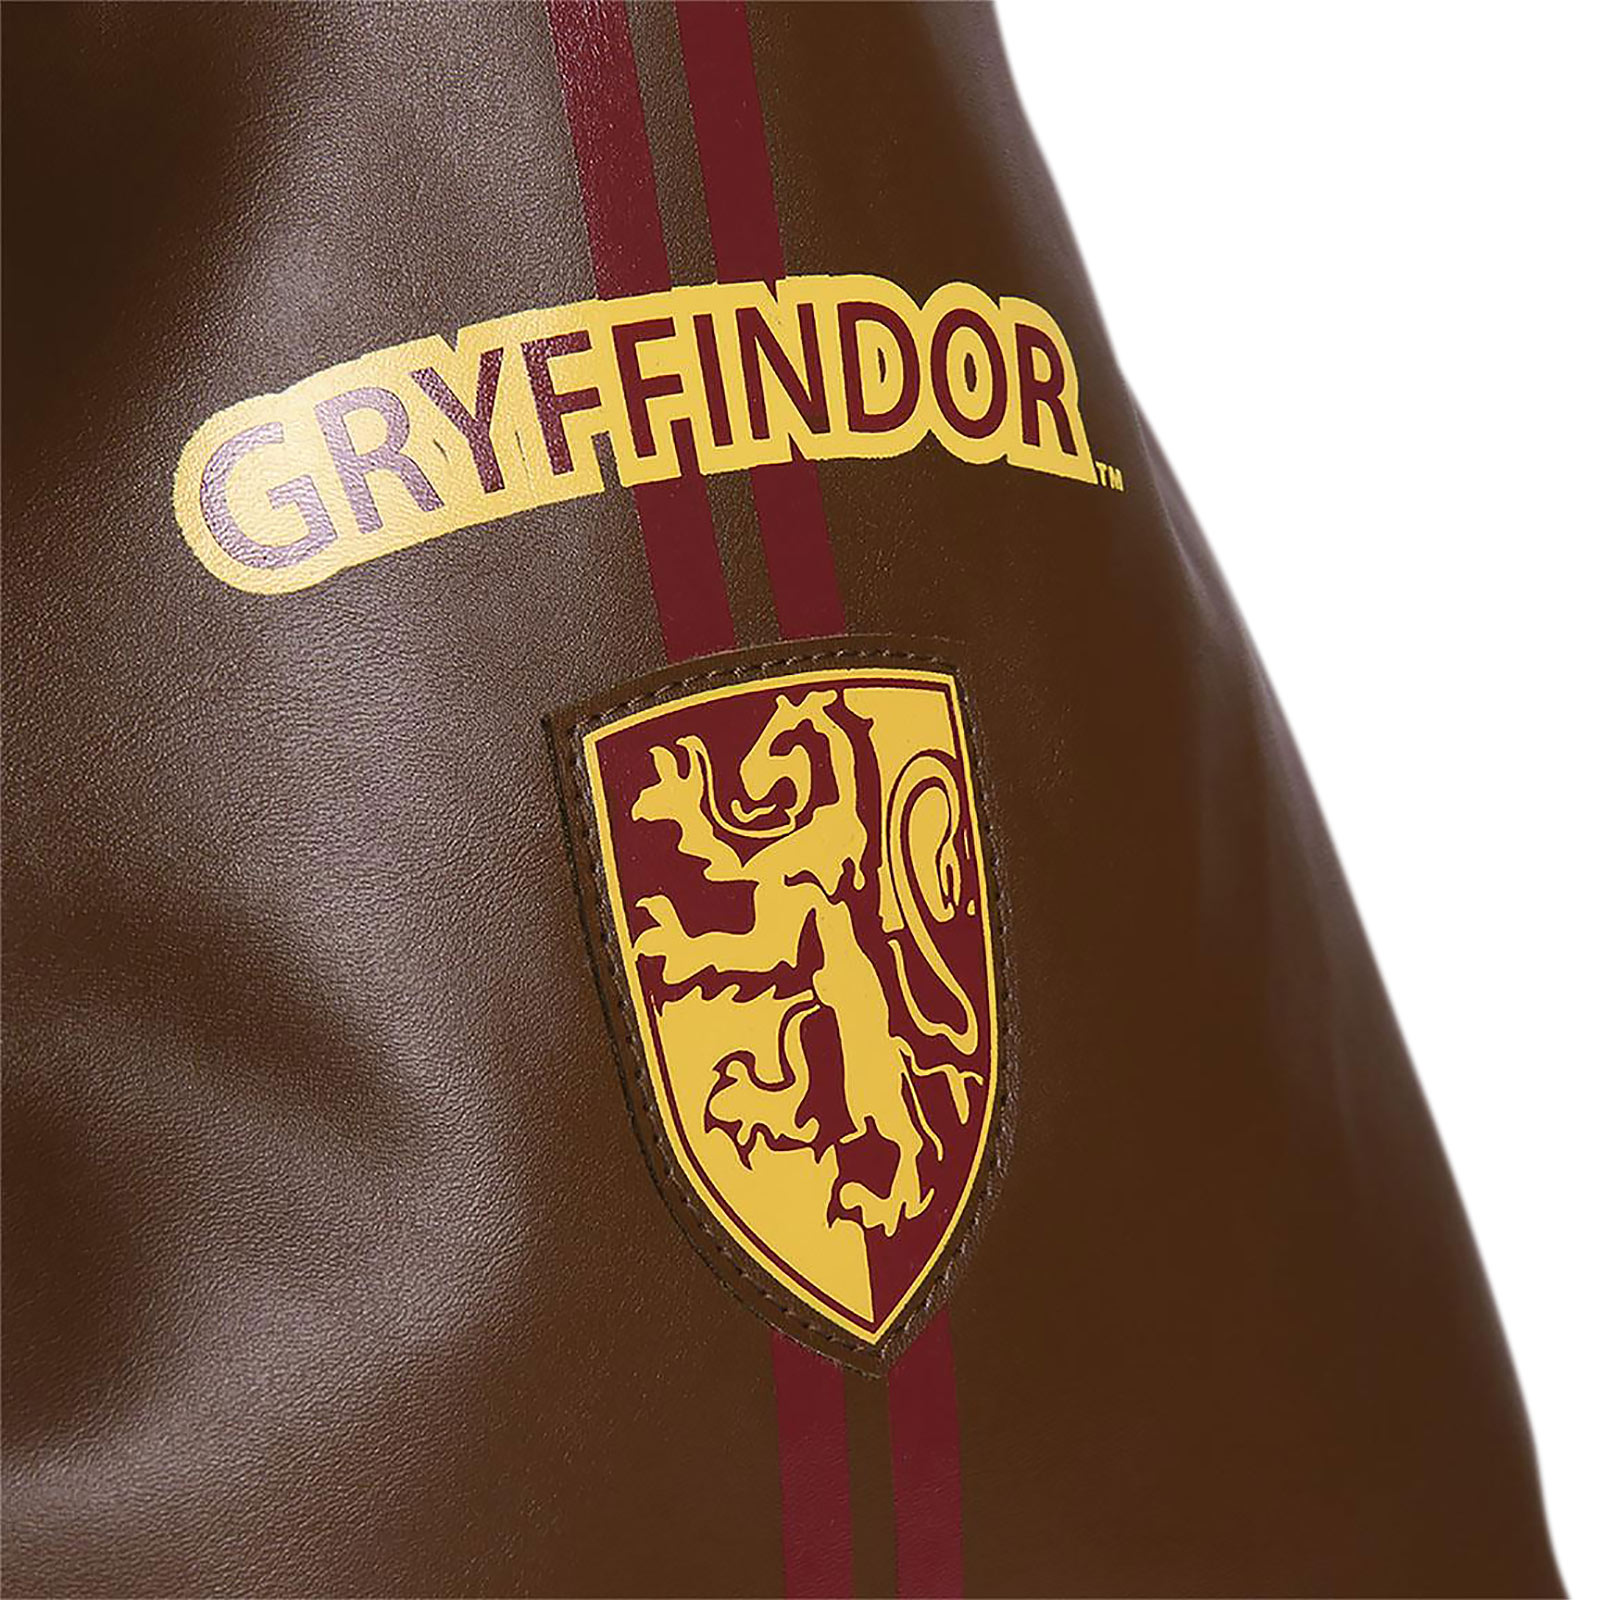 Harry Potter - Gryffindor College Shopper Bag